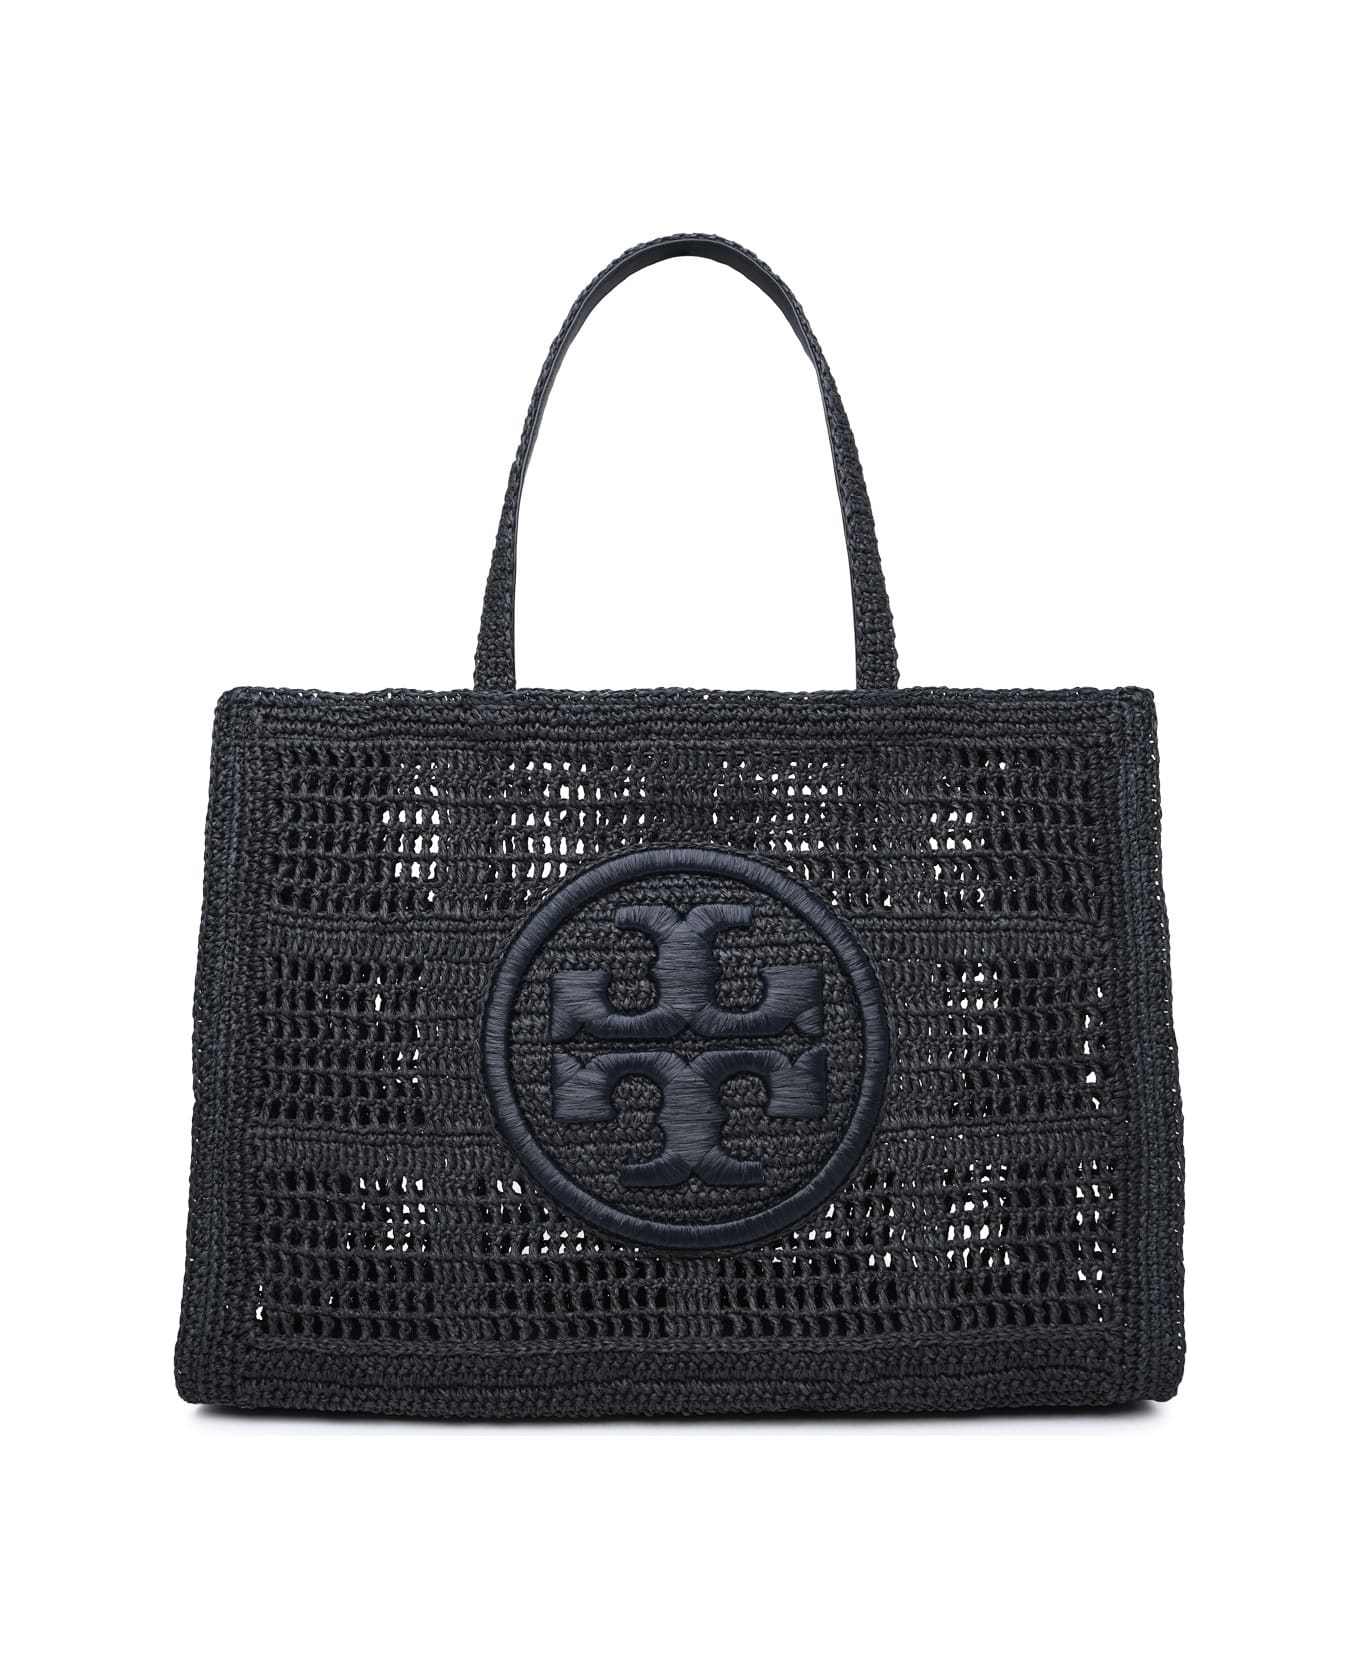 Tory Burch 'ella' Large Shopping Bag In Black Raffia - Black